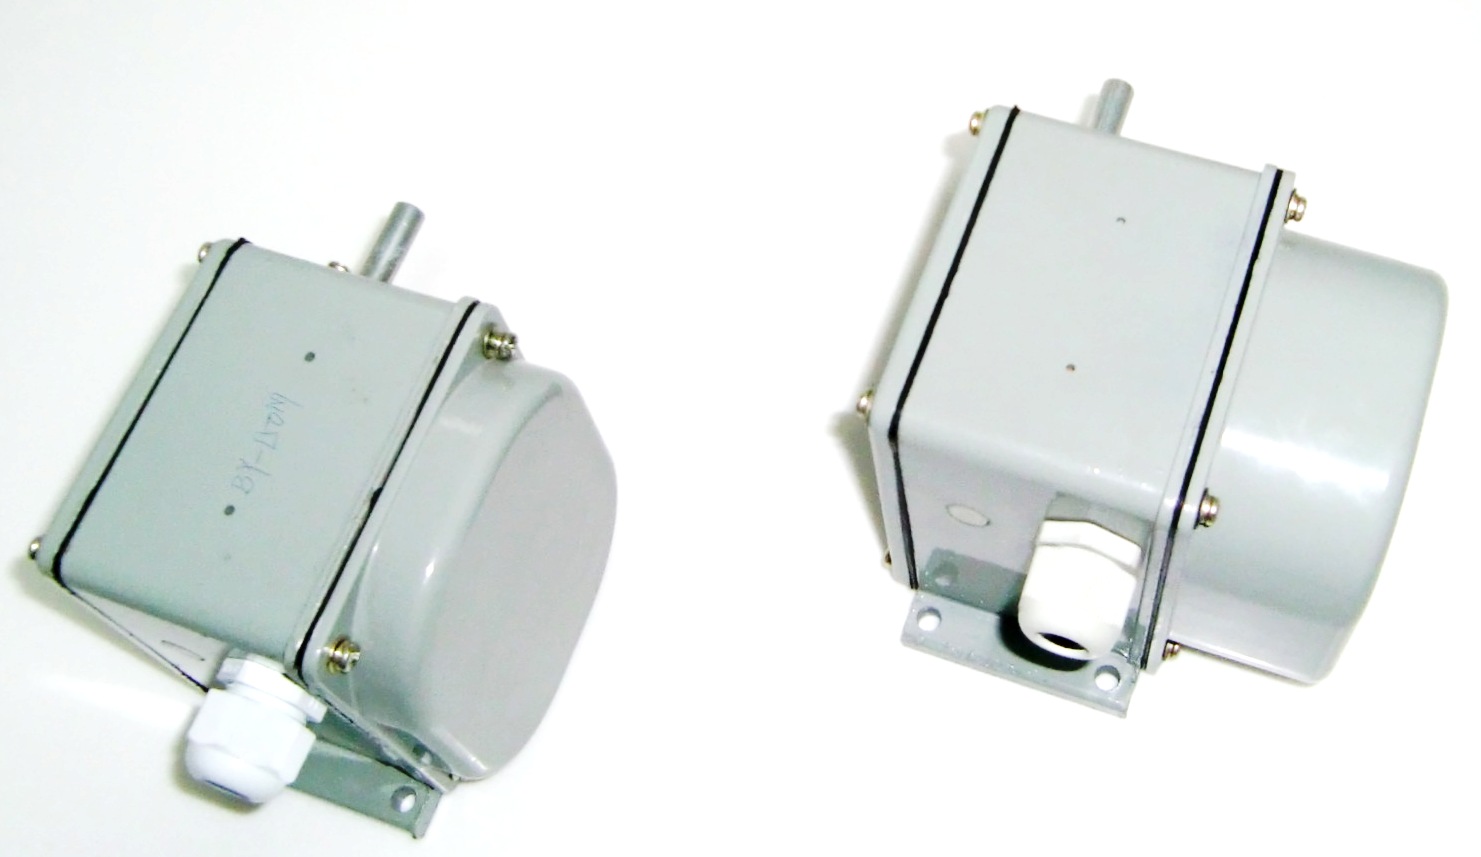 BU-150, BU-250 limit switches